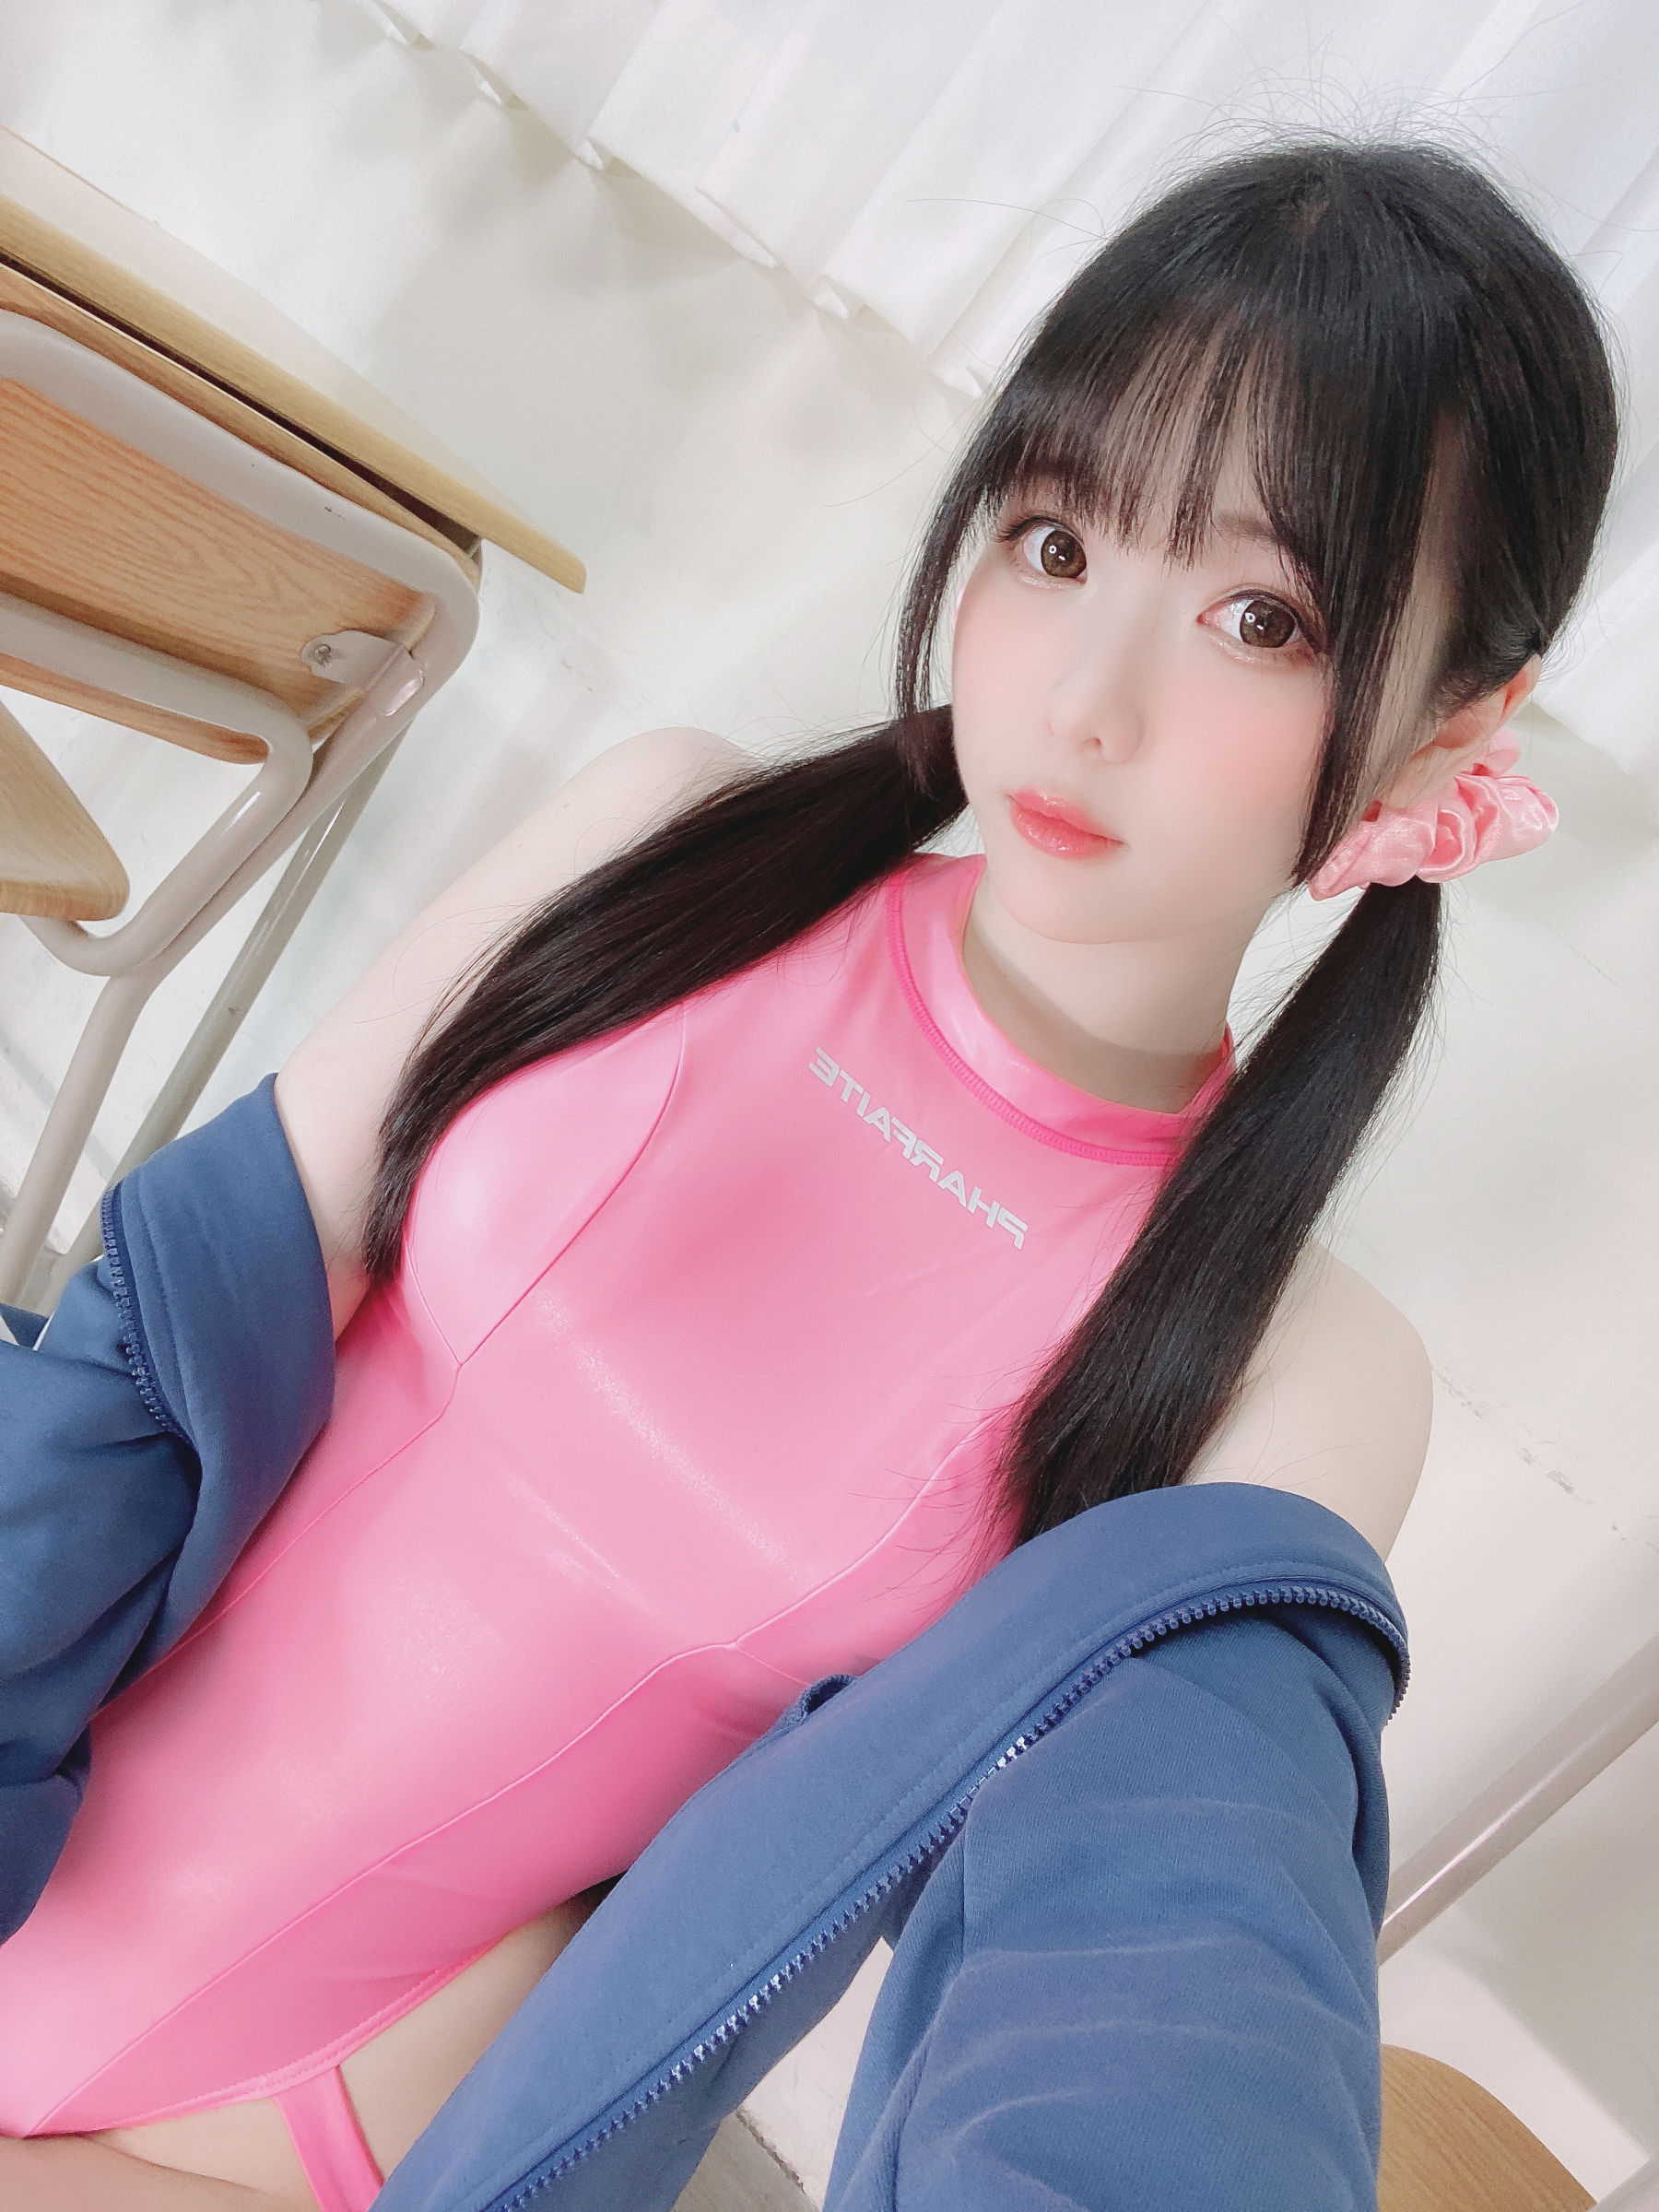 微博妹纸霜月shimo - Pink Swimsuit